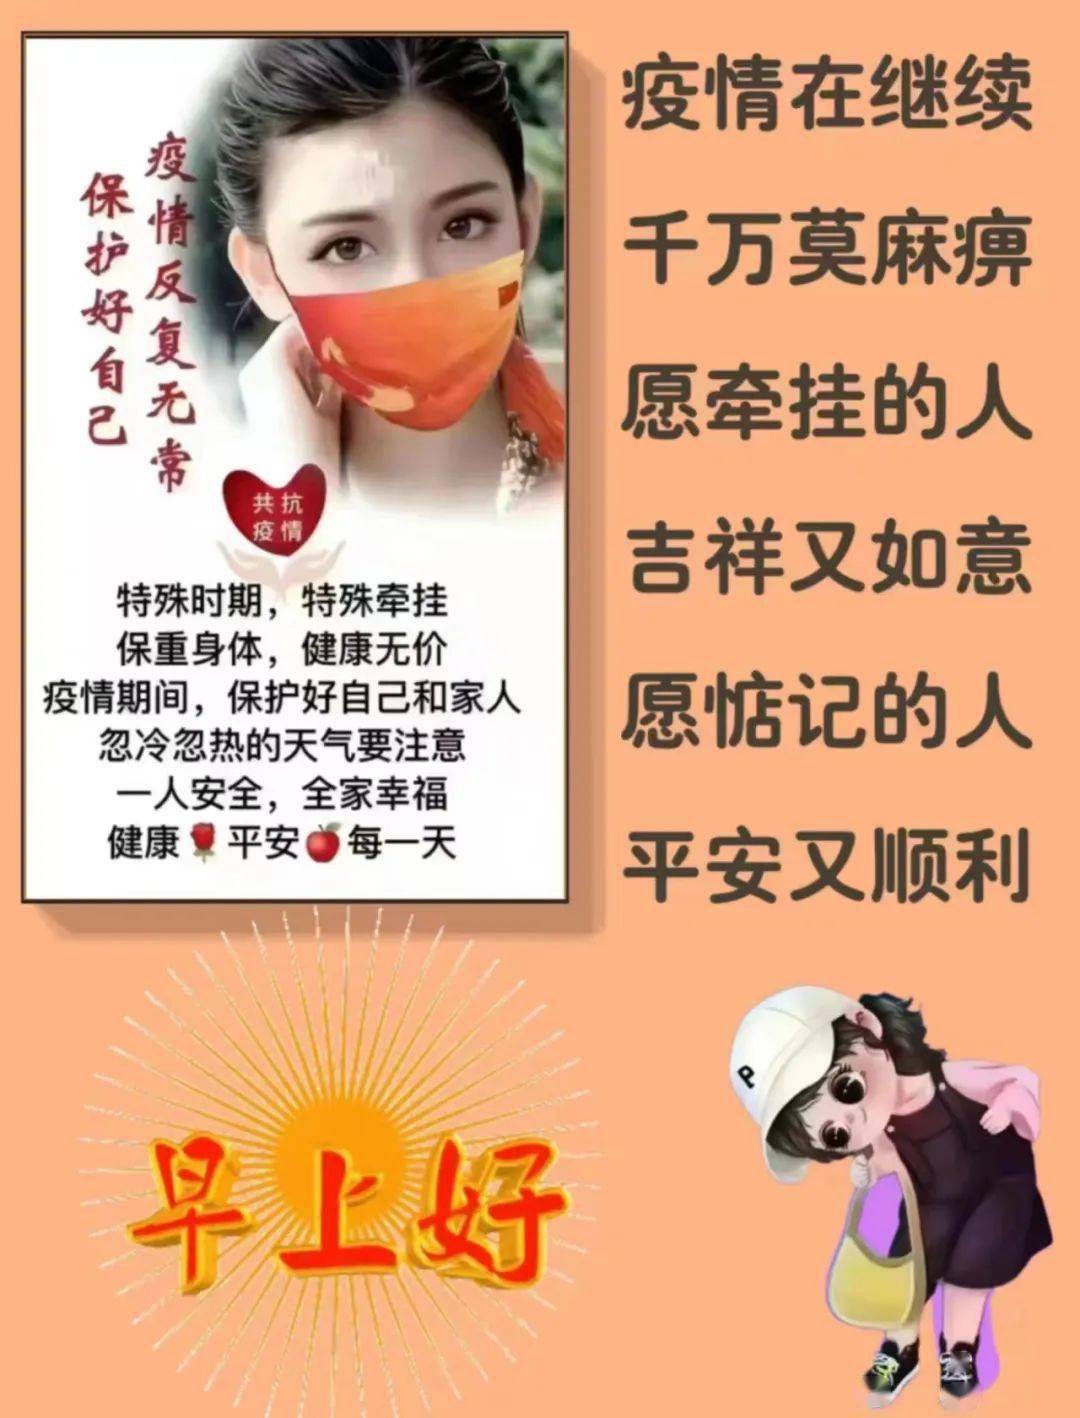 上海疫情祝福图片带字图片